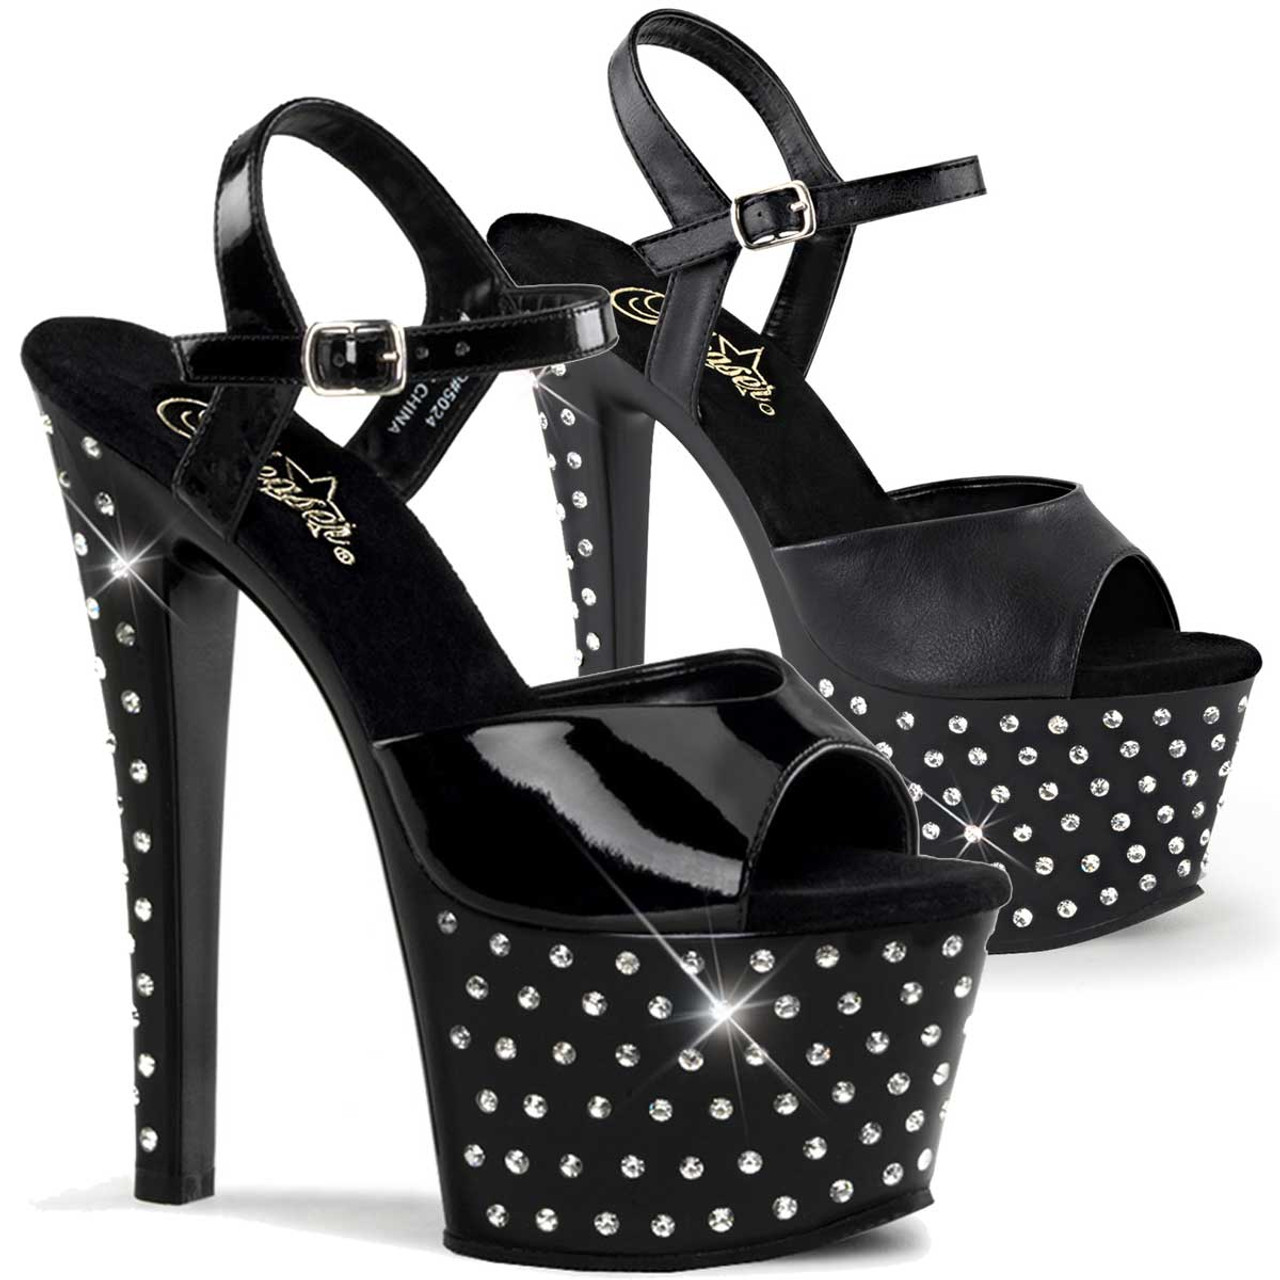 Hot chick black shiny pump - Shoebidoo Shoes | Giaro high heels